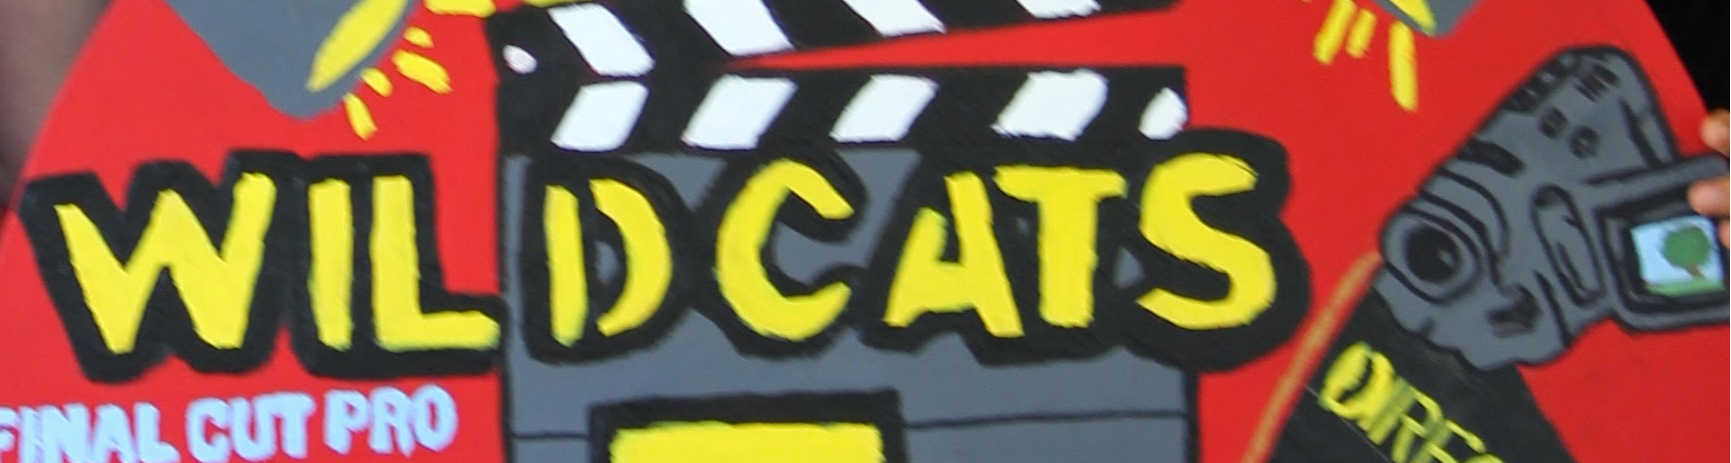 Wildcats sign